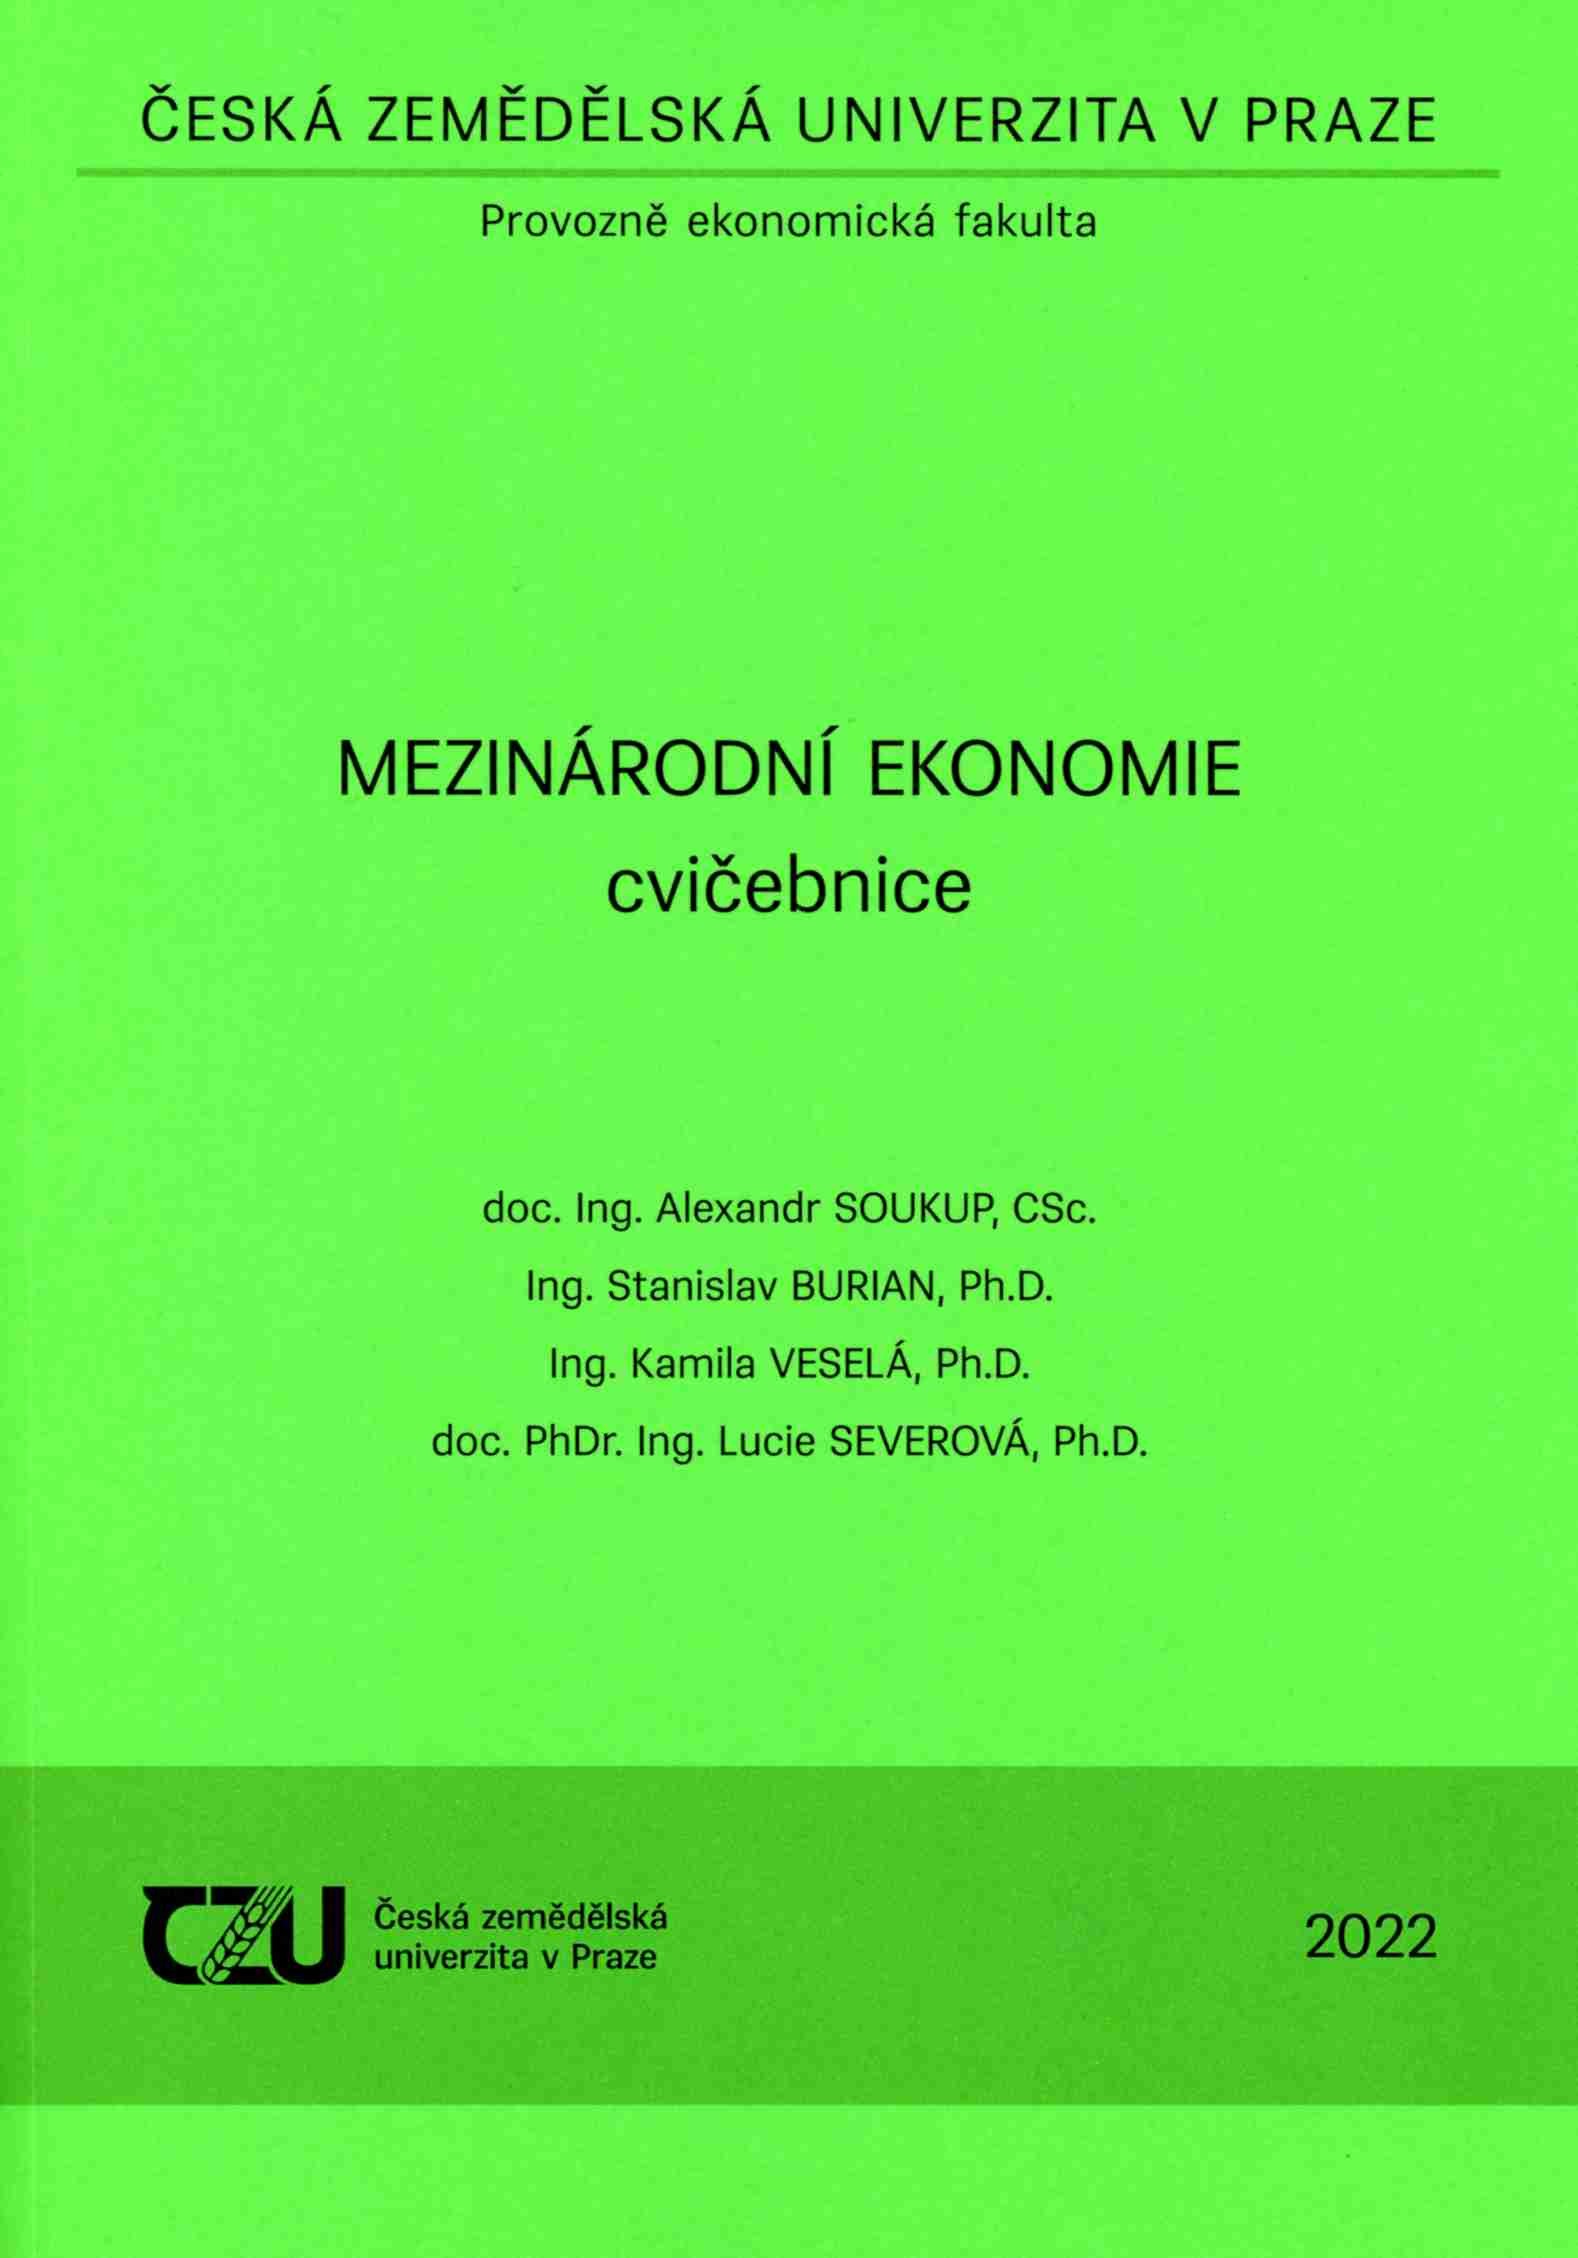 Mezinárodní ekonomie - cvičebnice, 178